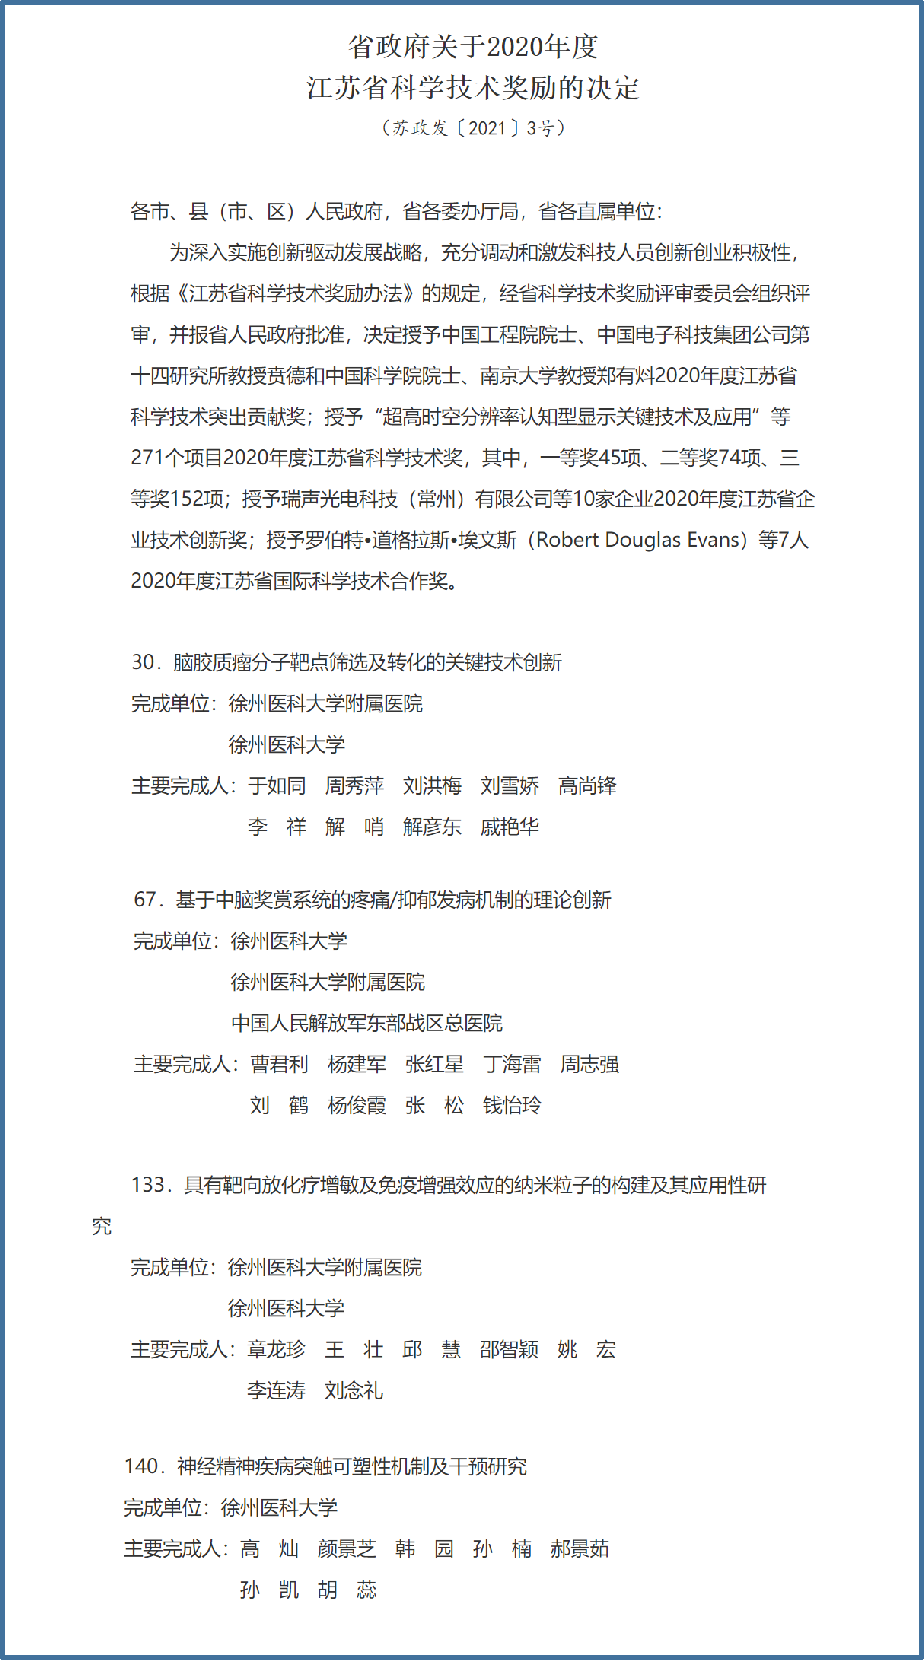 徐州医科大学4项科技成果获2020年度江苏省科学技术奖